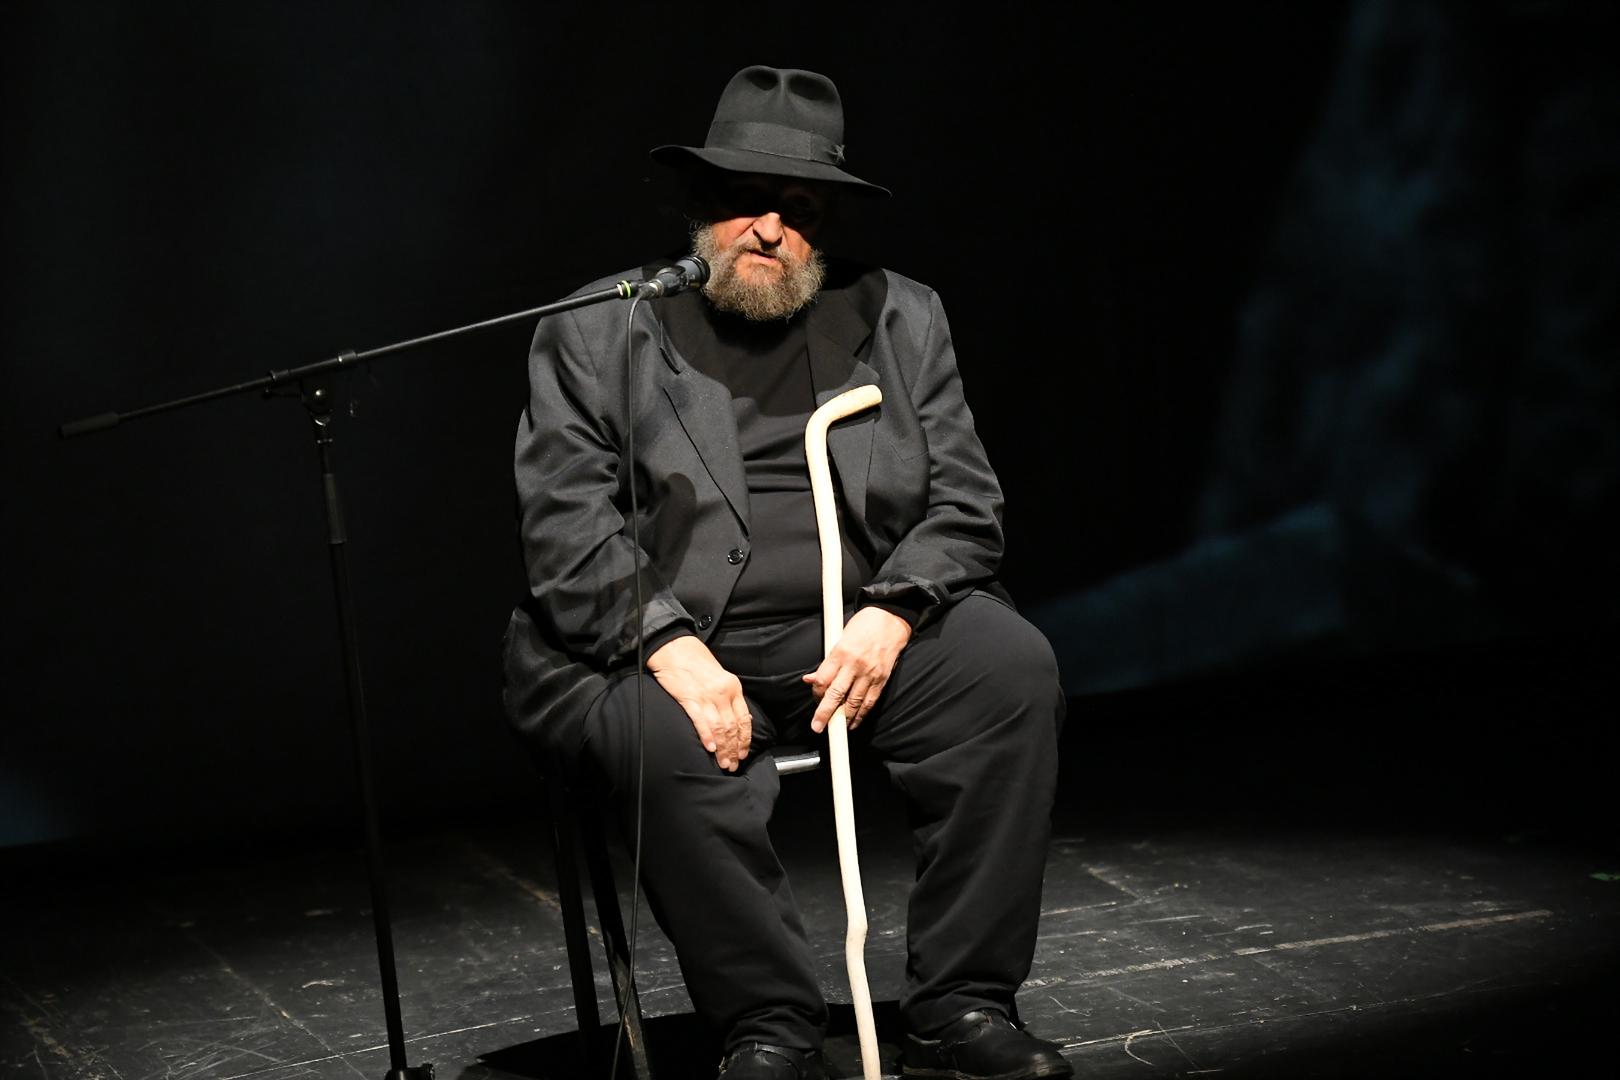 "Odleti nam Žare", rekao je Božović na kraju govora, a zatim ustao, skinuo šešir i poklonio se glumcu.